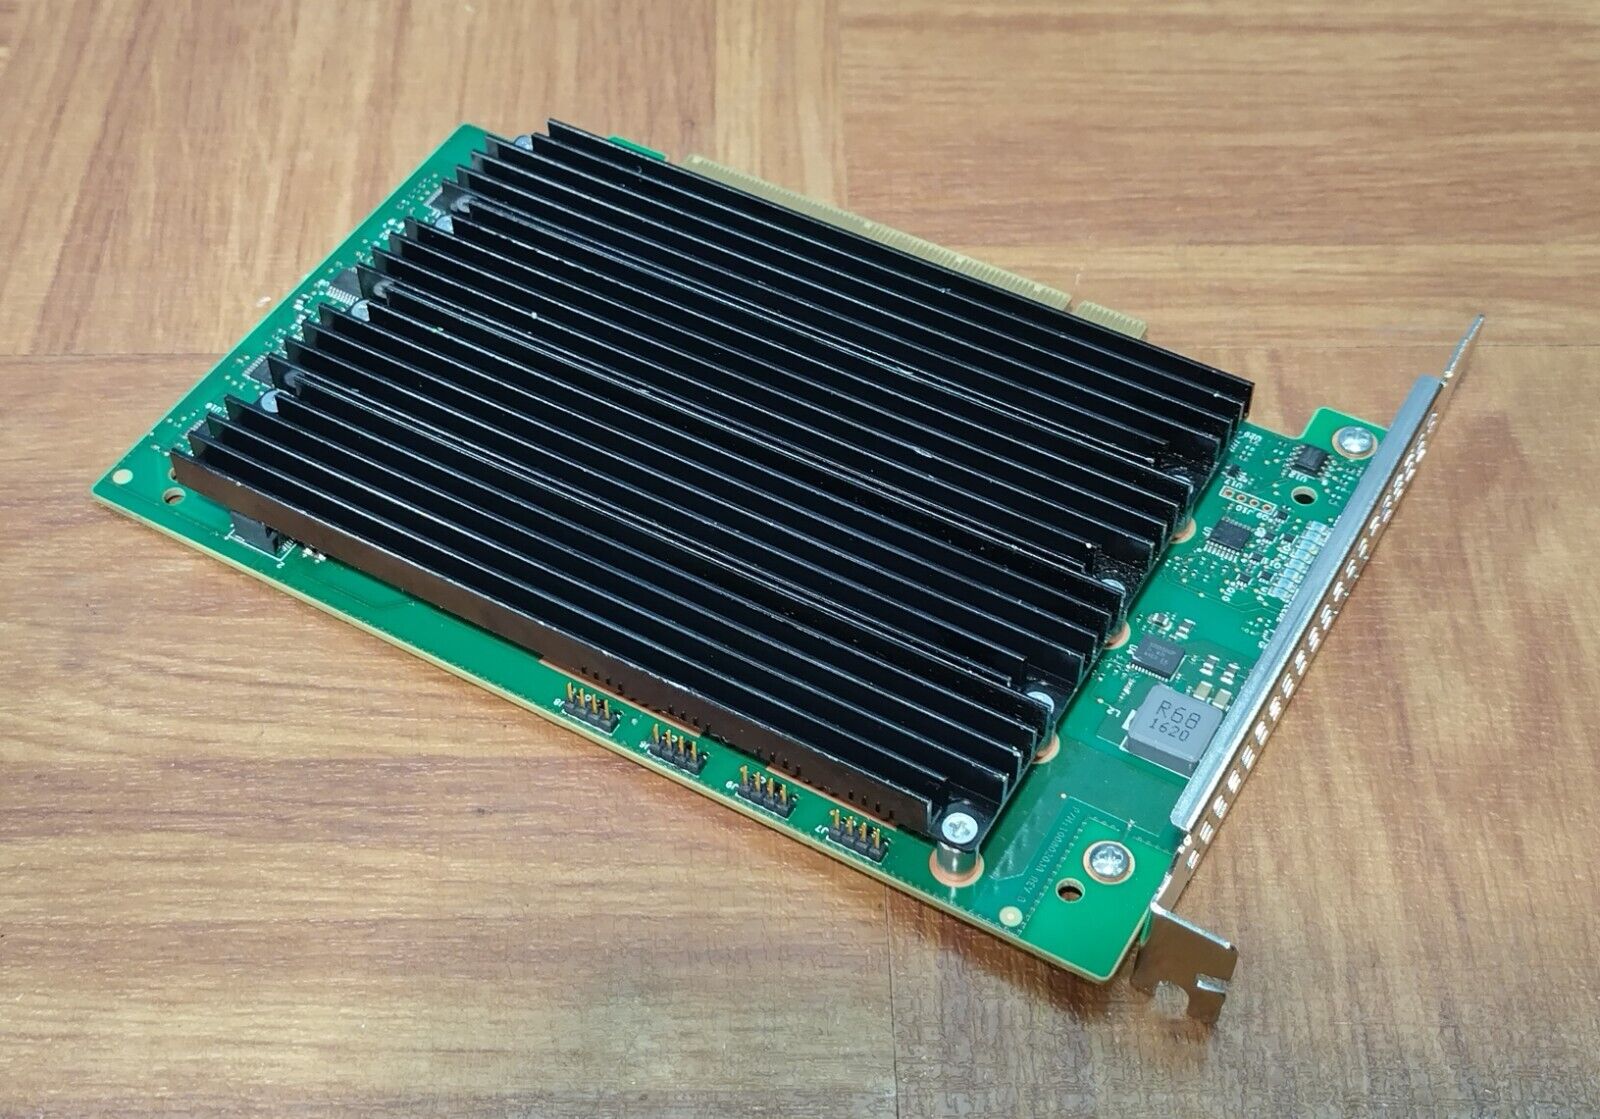 Seagate Nytro XP7200 P/N 05KPNT PCIe Gen3 x16 NVMe MLC Expansion Card (No SSD)